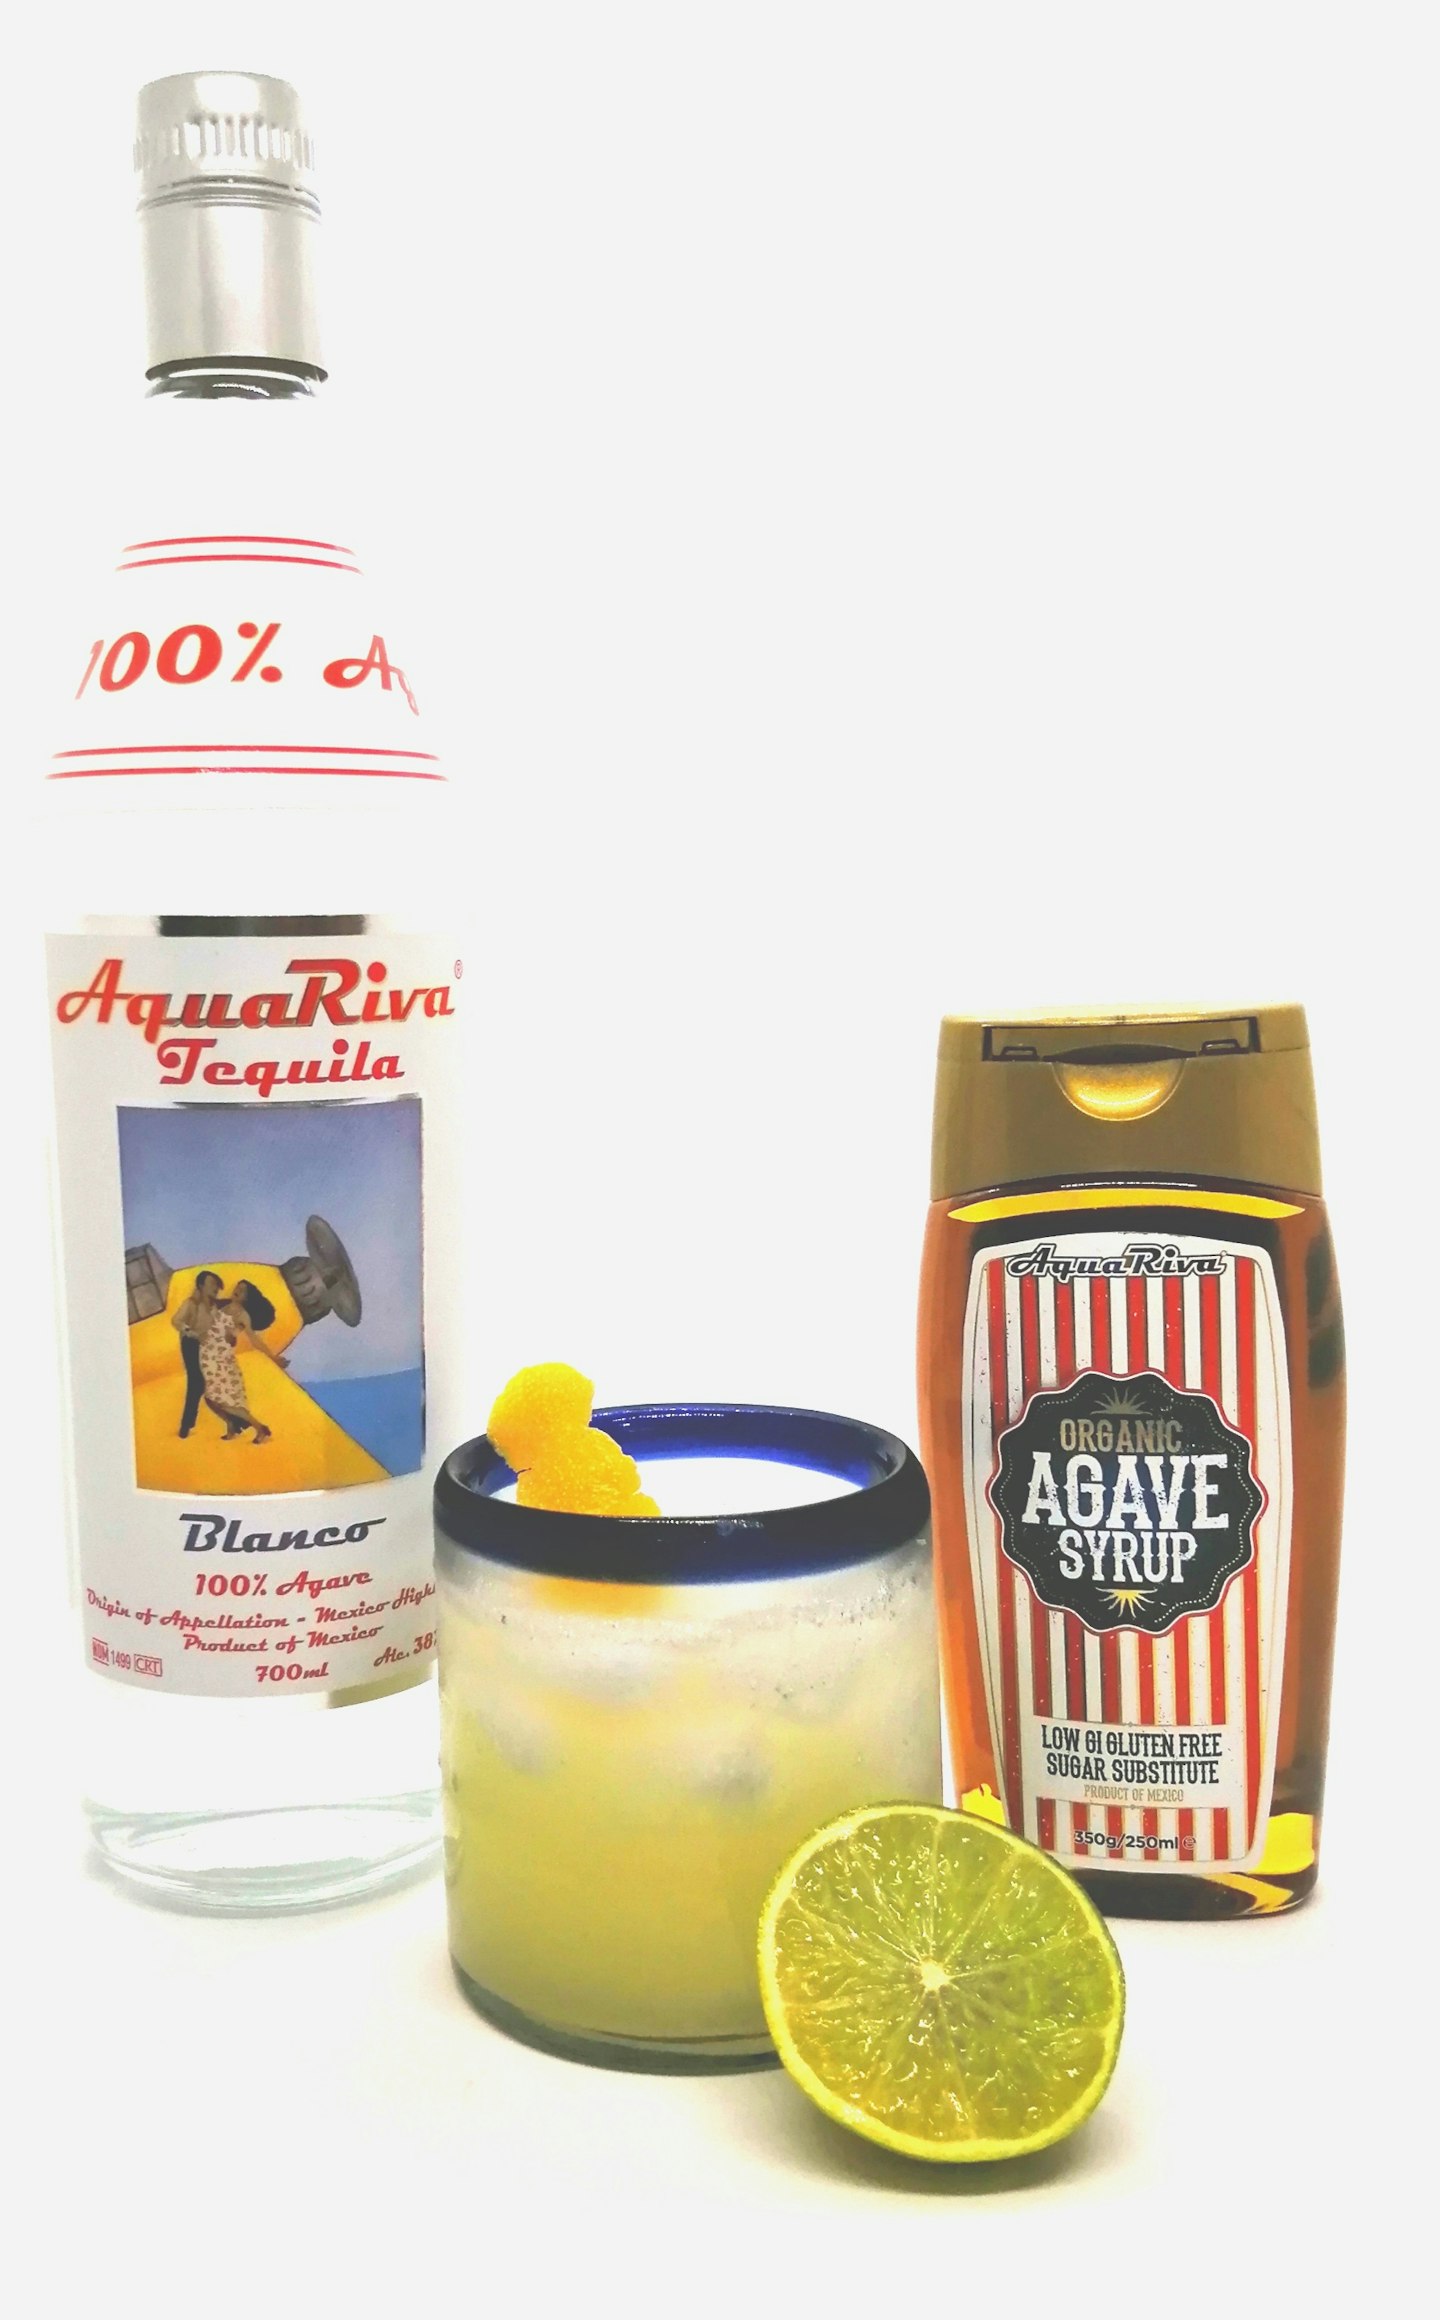 Classic Margarita Recipe